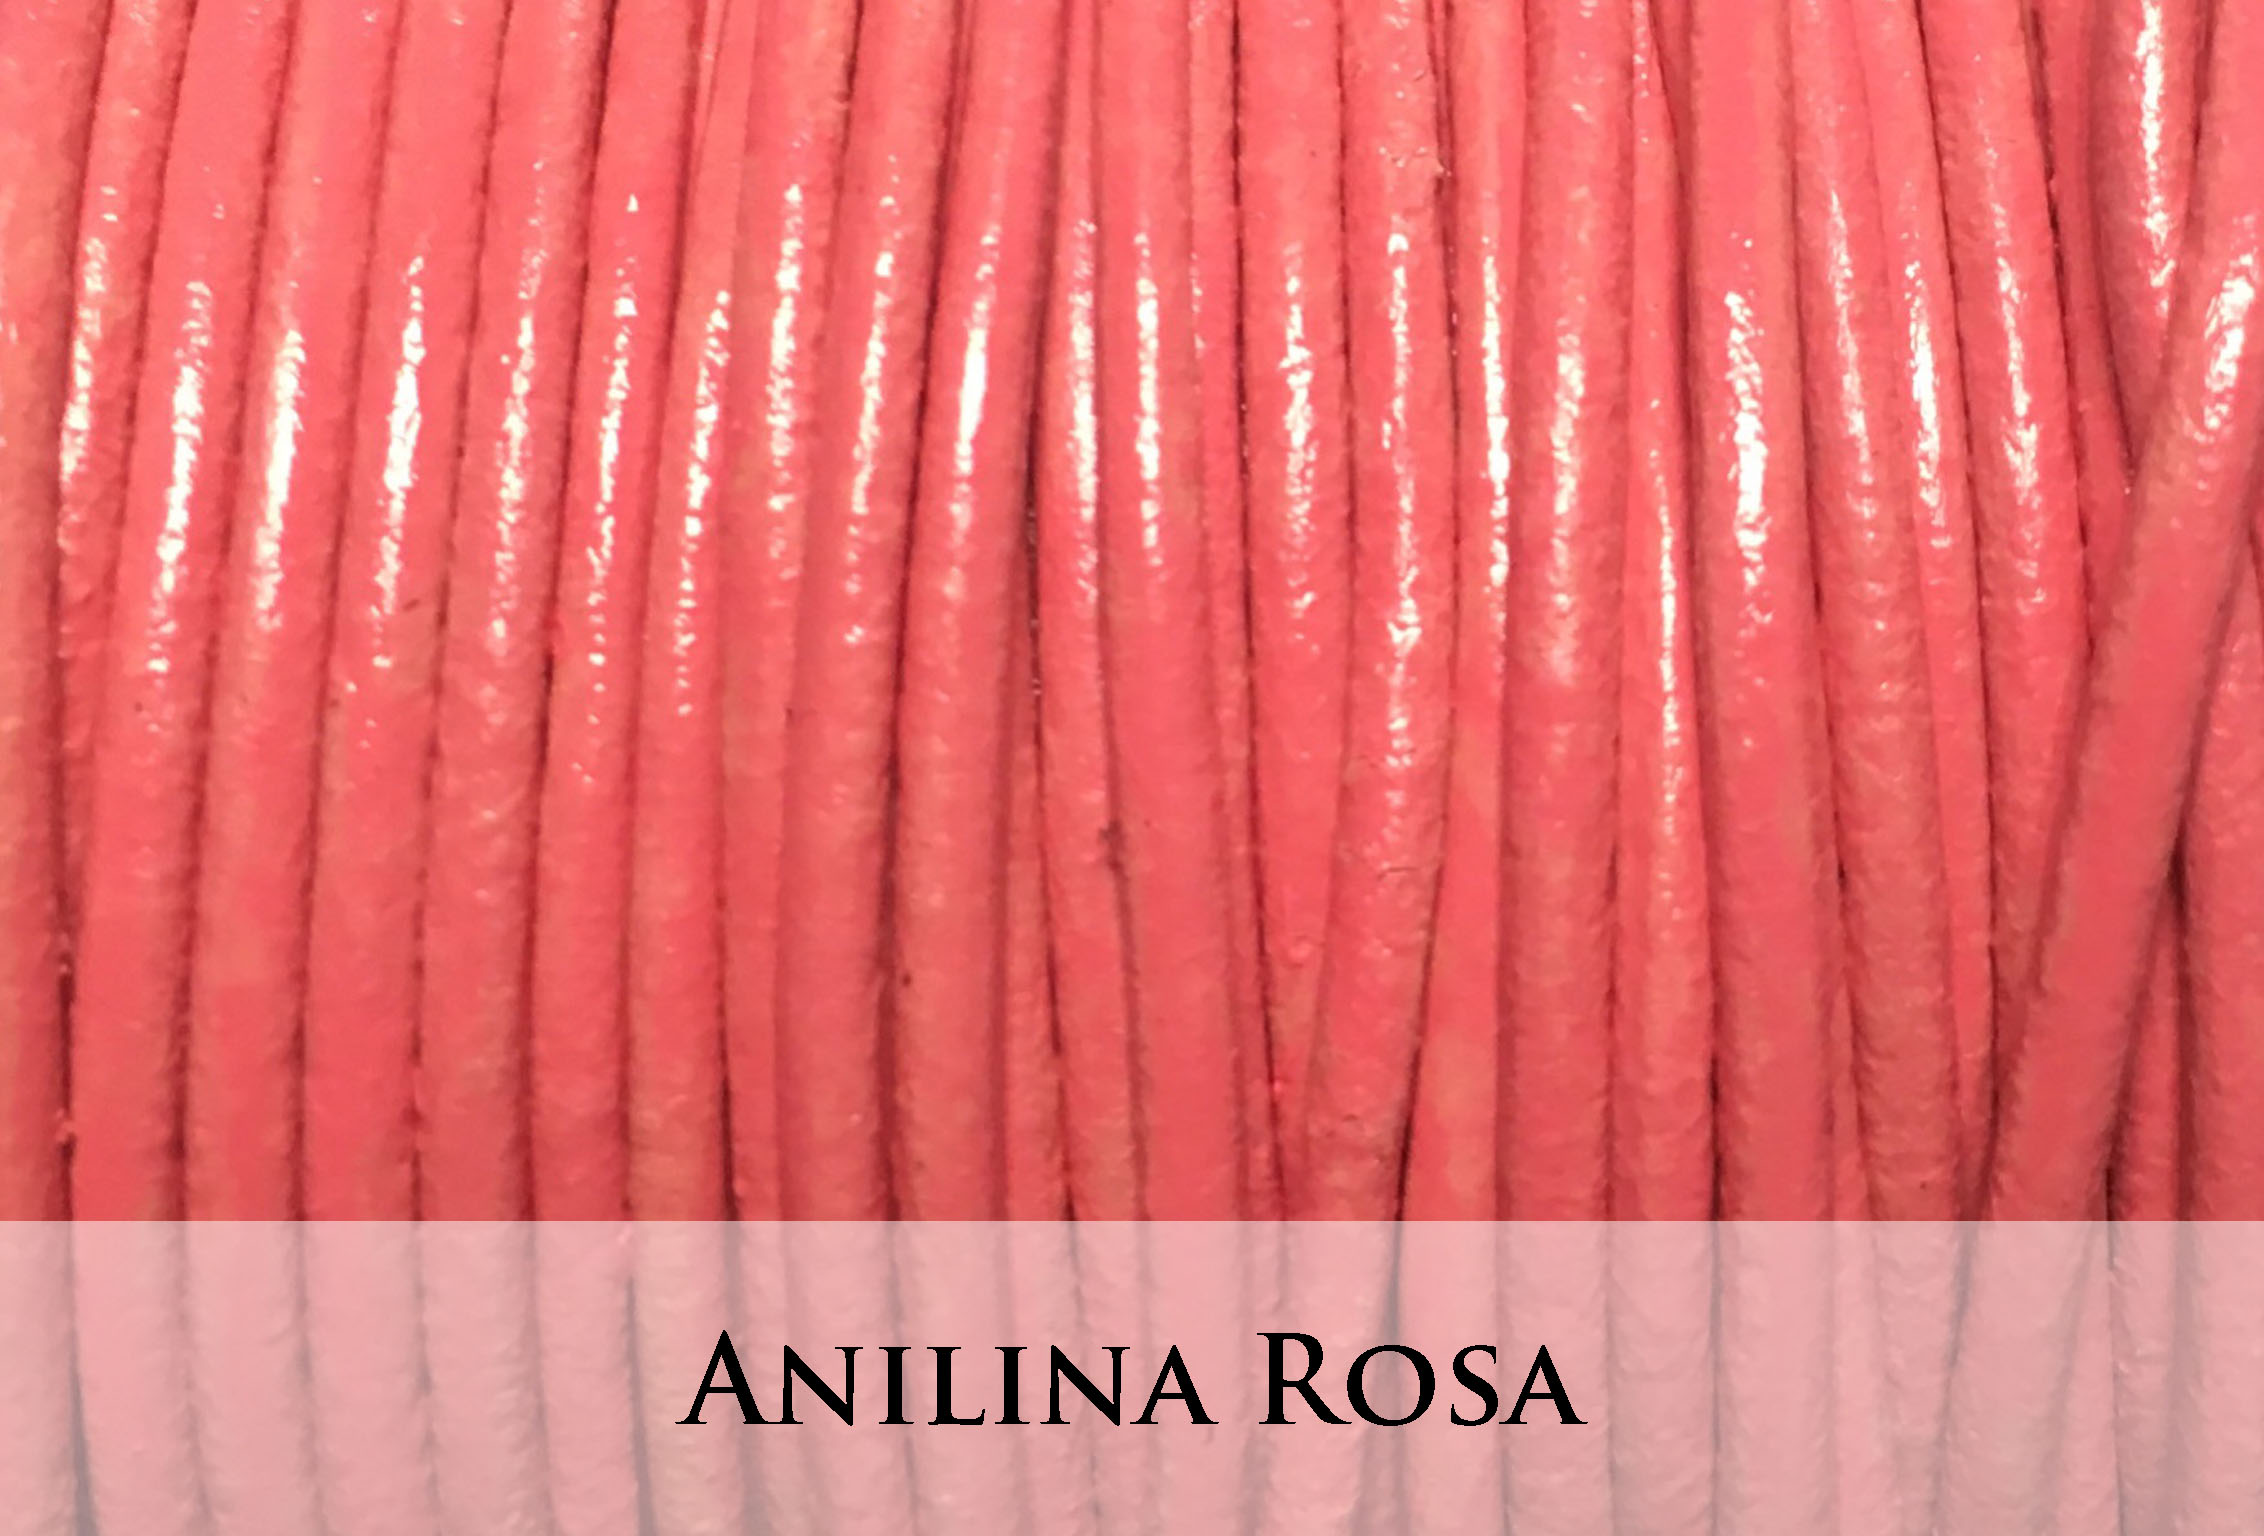 Anilina Rosa